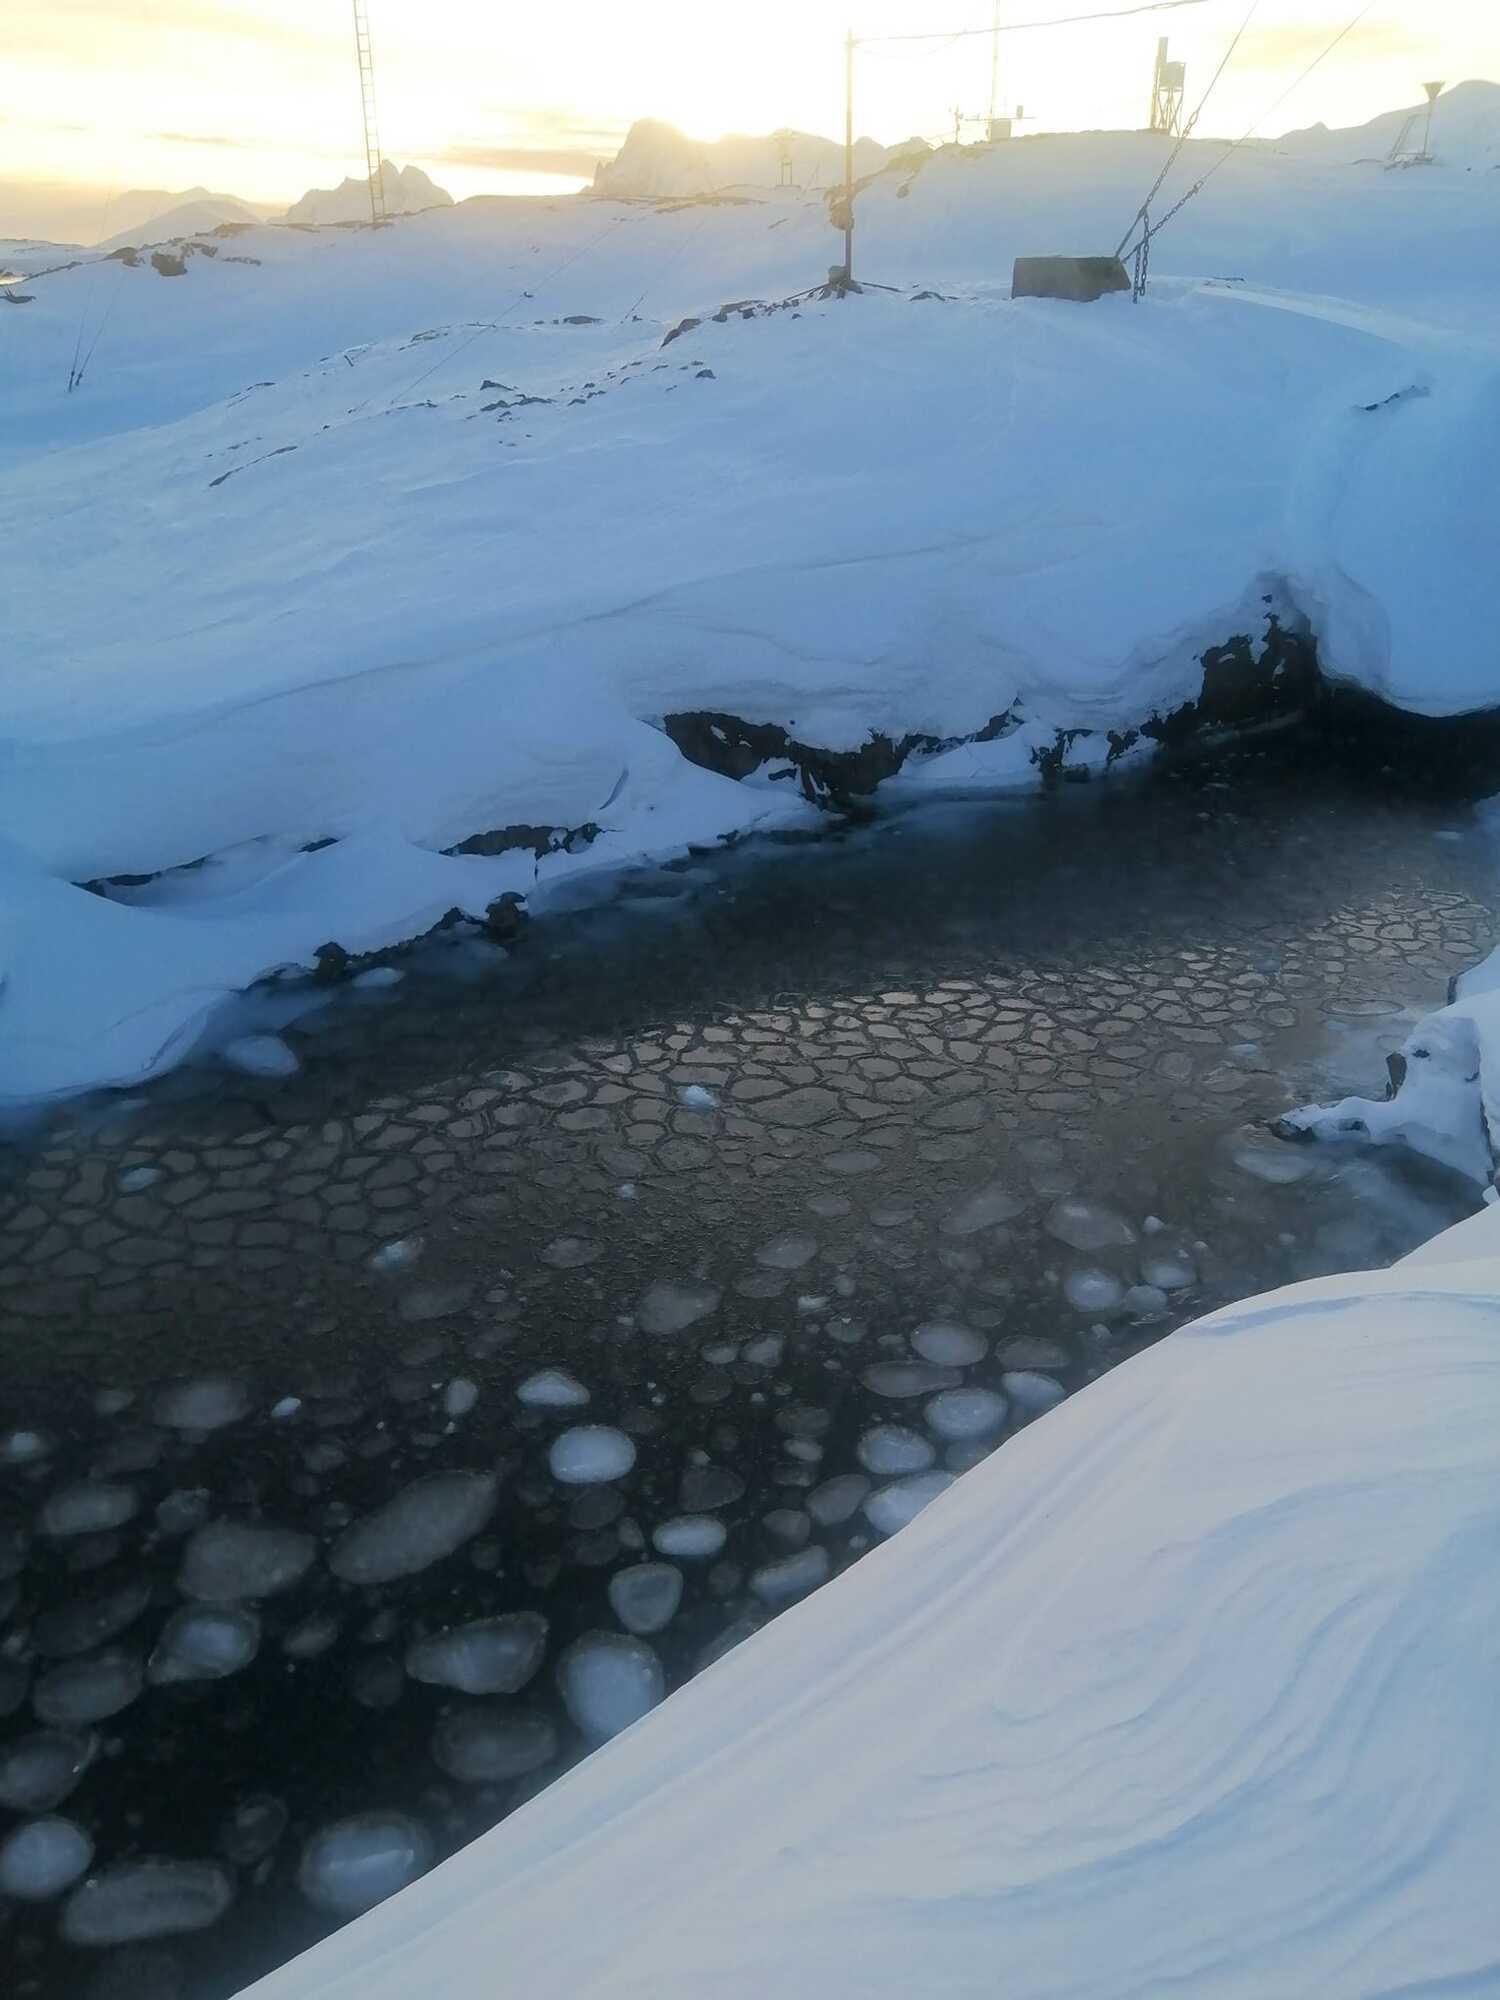 "Млинцевий лід": українські полярники в Антарктиці показали вражаюче явище. Фото 